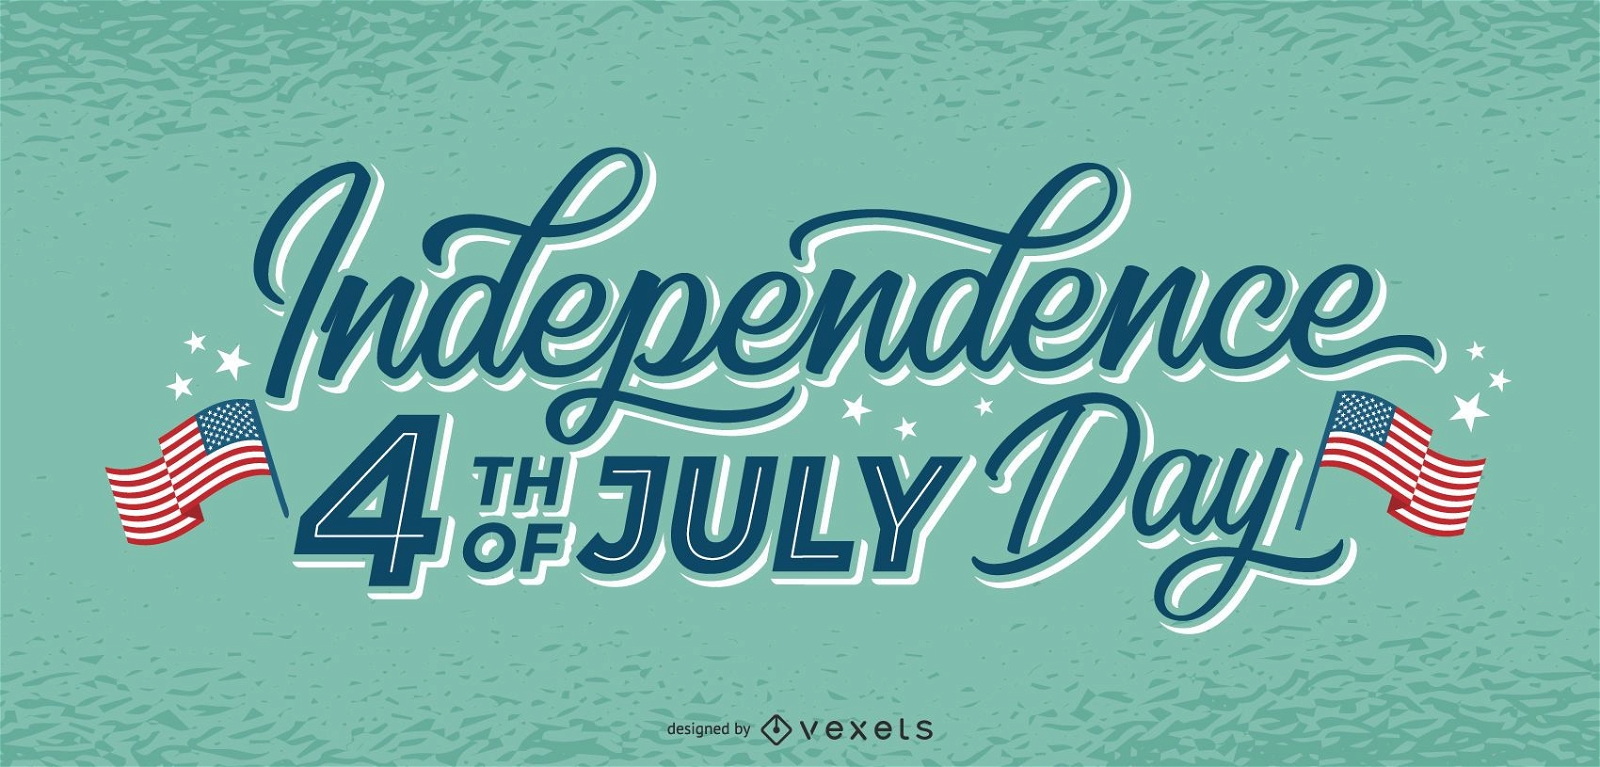 D?a de la independencia 4 de julio letras